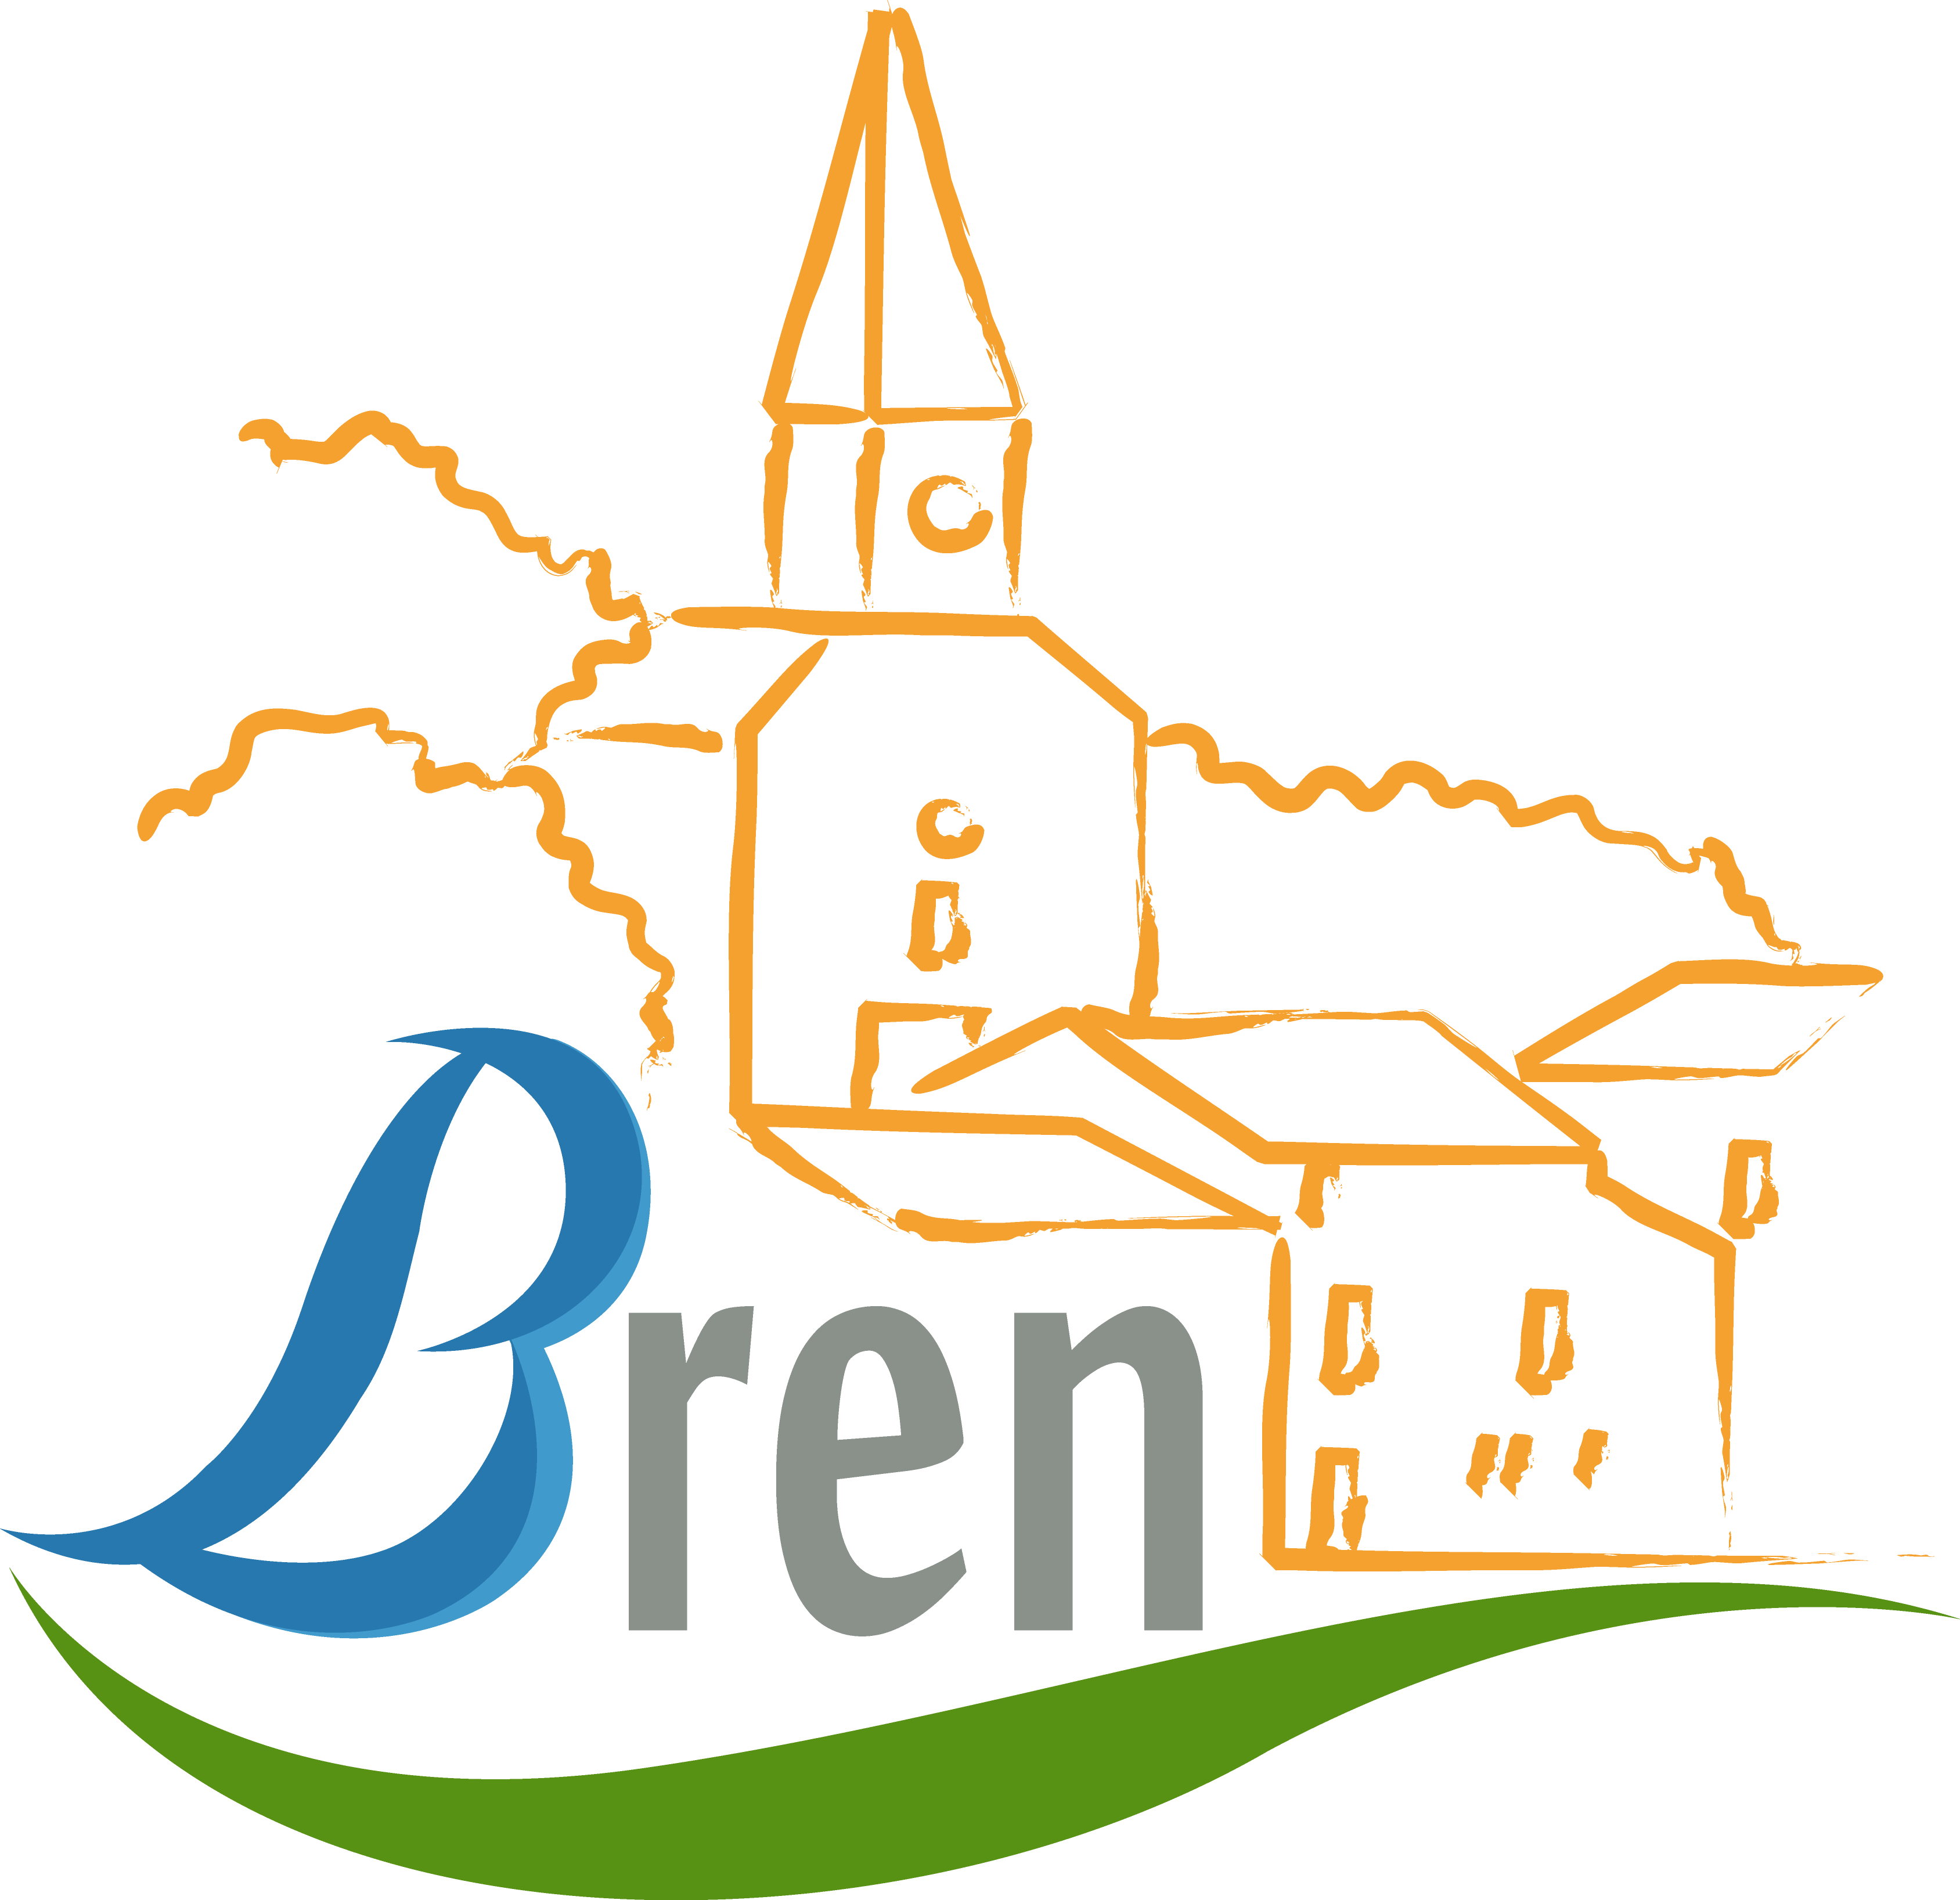 Bren – Drôme 